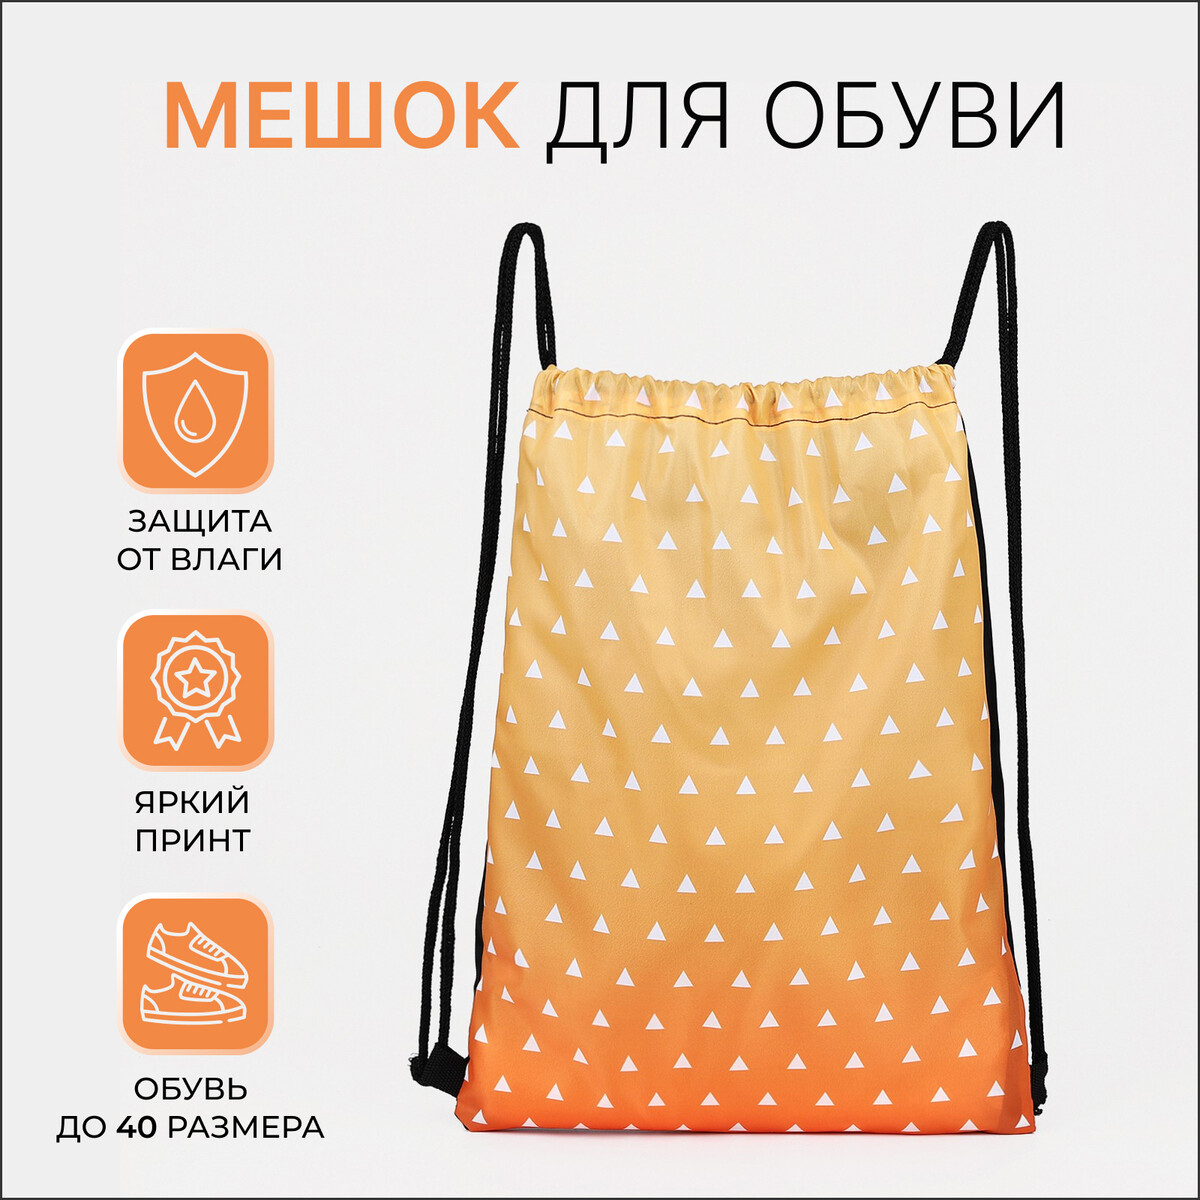 Мешок для обуви на шнурке, цвет желтый/оранжевый нарукавники и коврик мешок под колени оксфорд 240 оранжевый